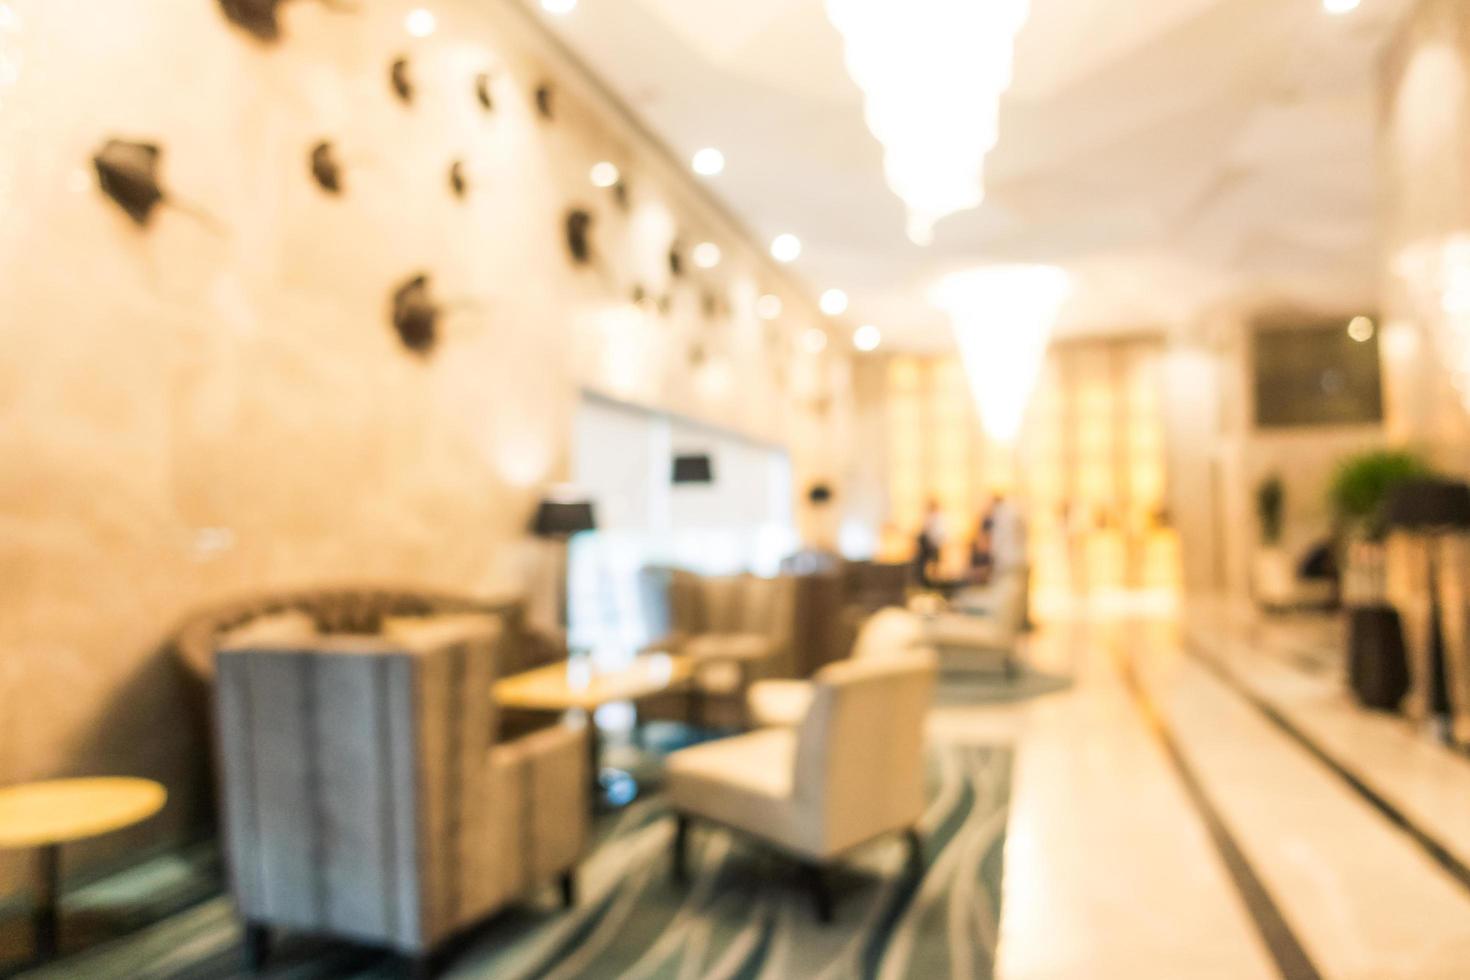 abstrakt oskärpa oskarpa hotell- och lobbyinredning foto